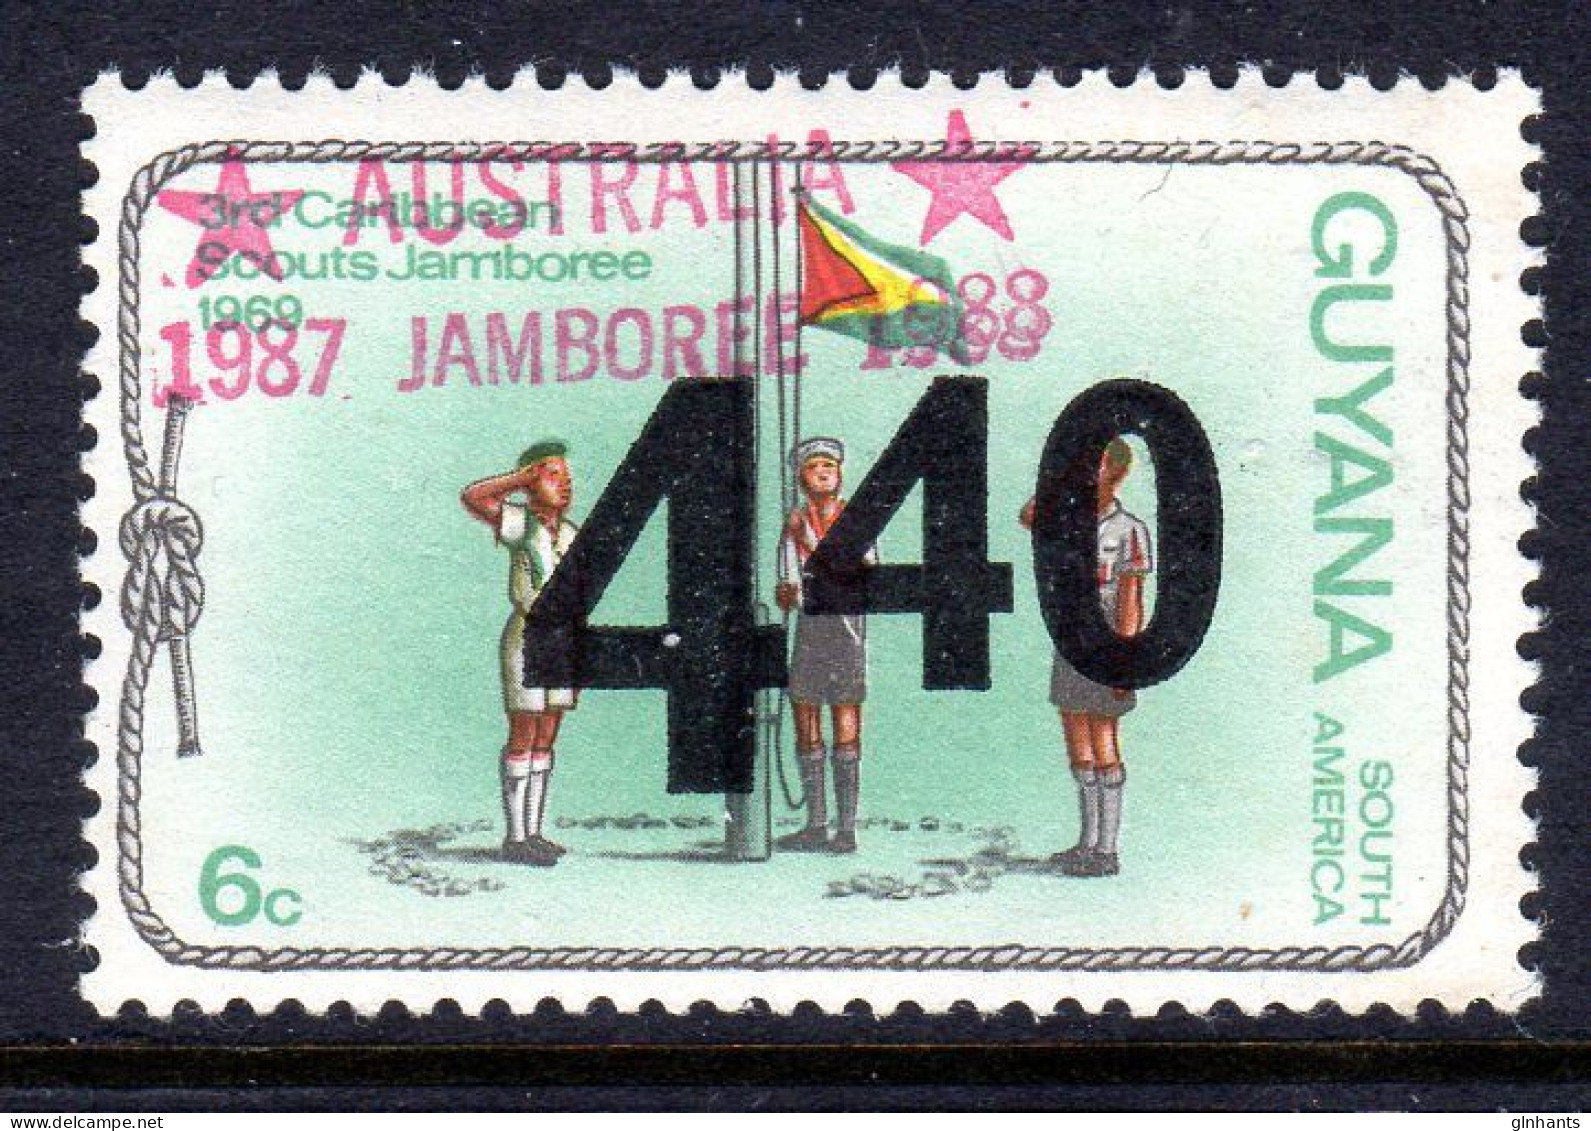 GUYANA - 1988 440 ON 6c AUSTRALIA JAMBOREE OVERPRINT FINE MNH ** SG 2266 REF B - Guyana (1966-...)